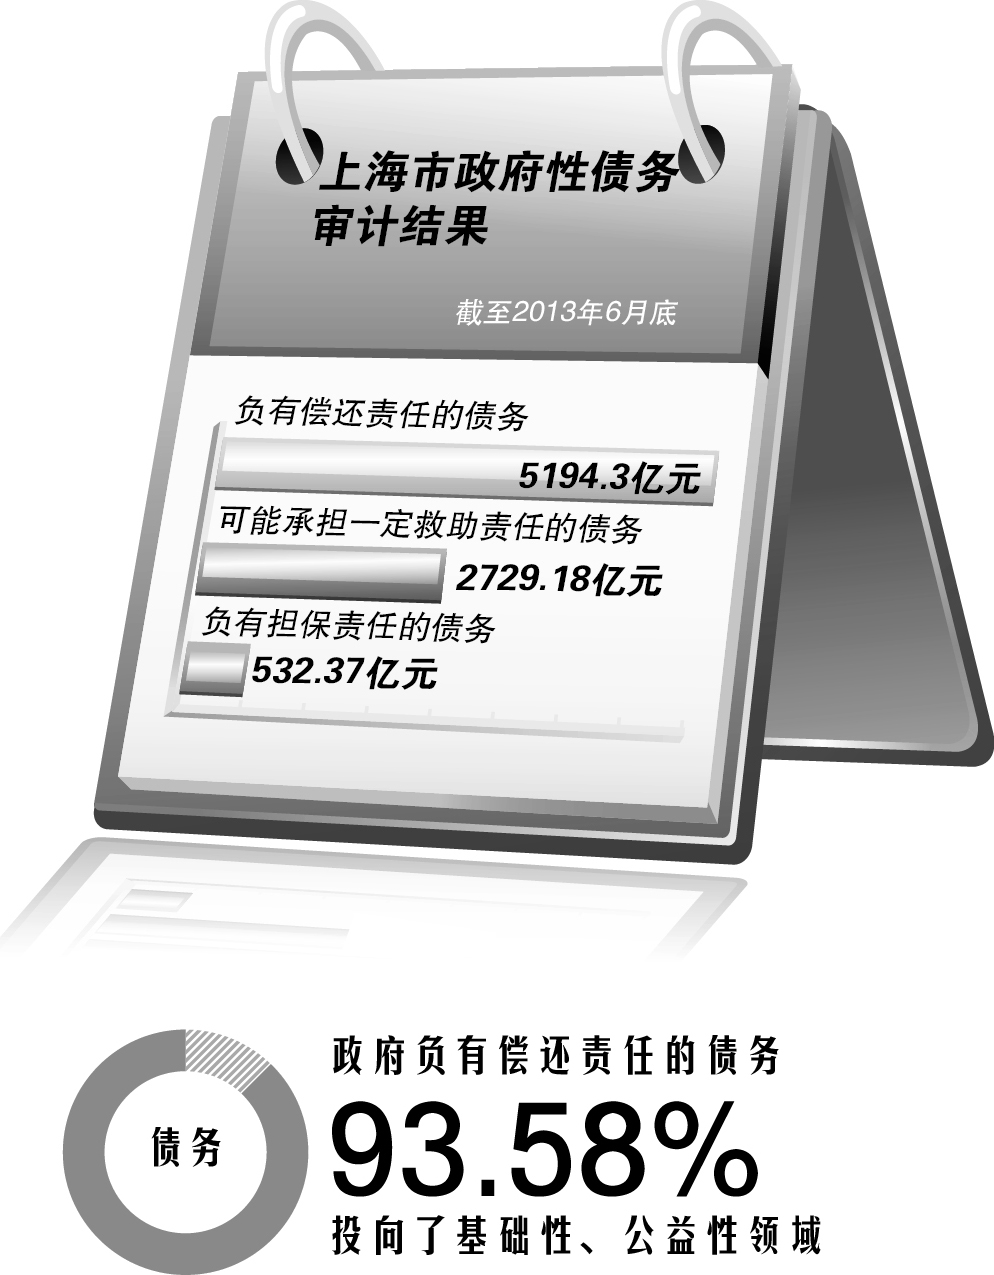 江苏负偿还责任债务超过广东 达7635.72亿元